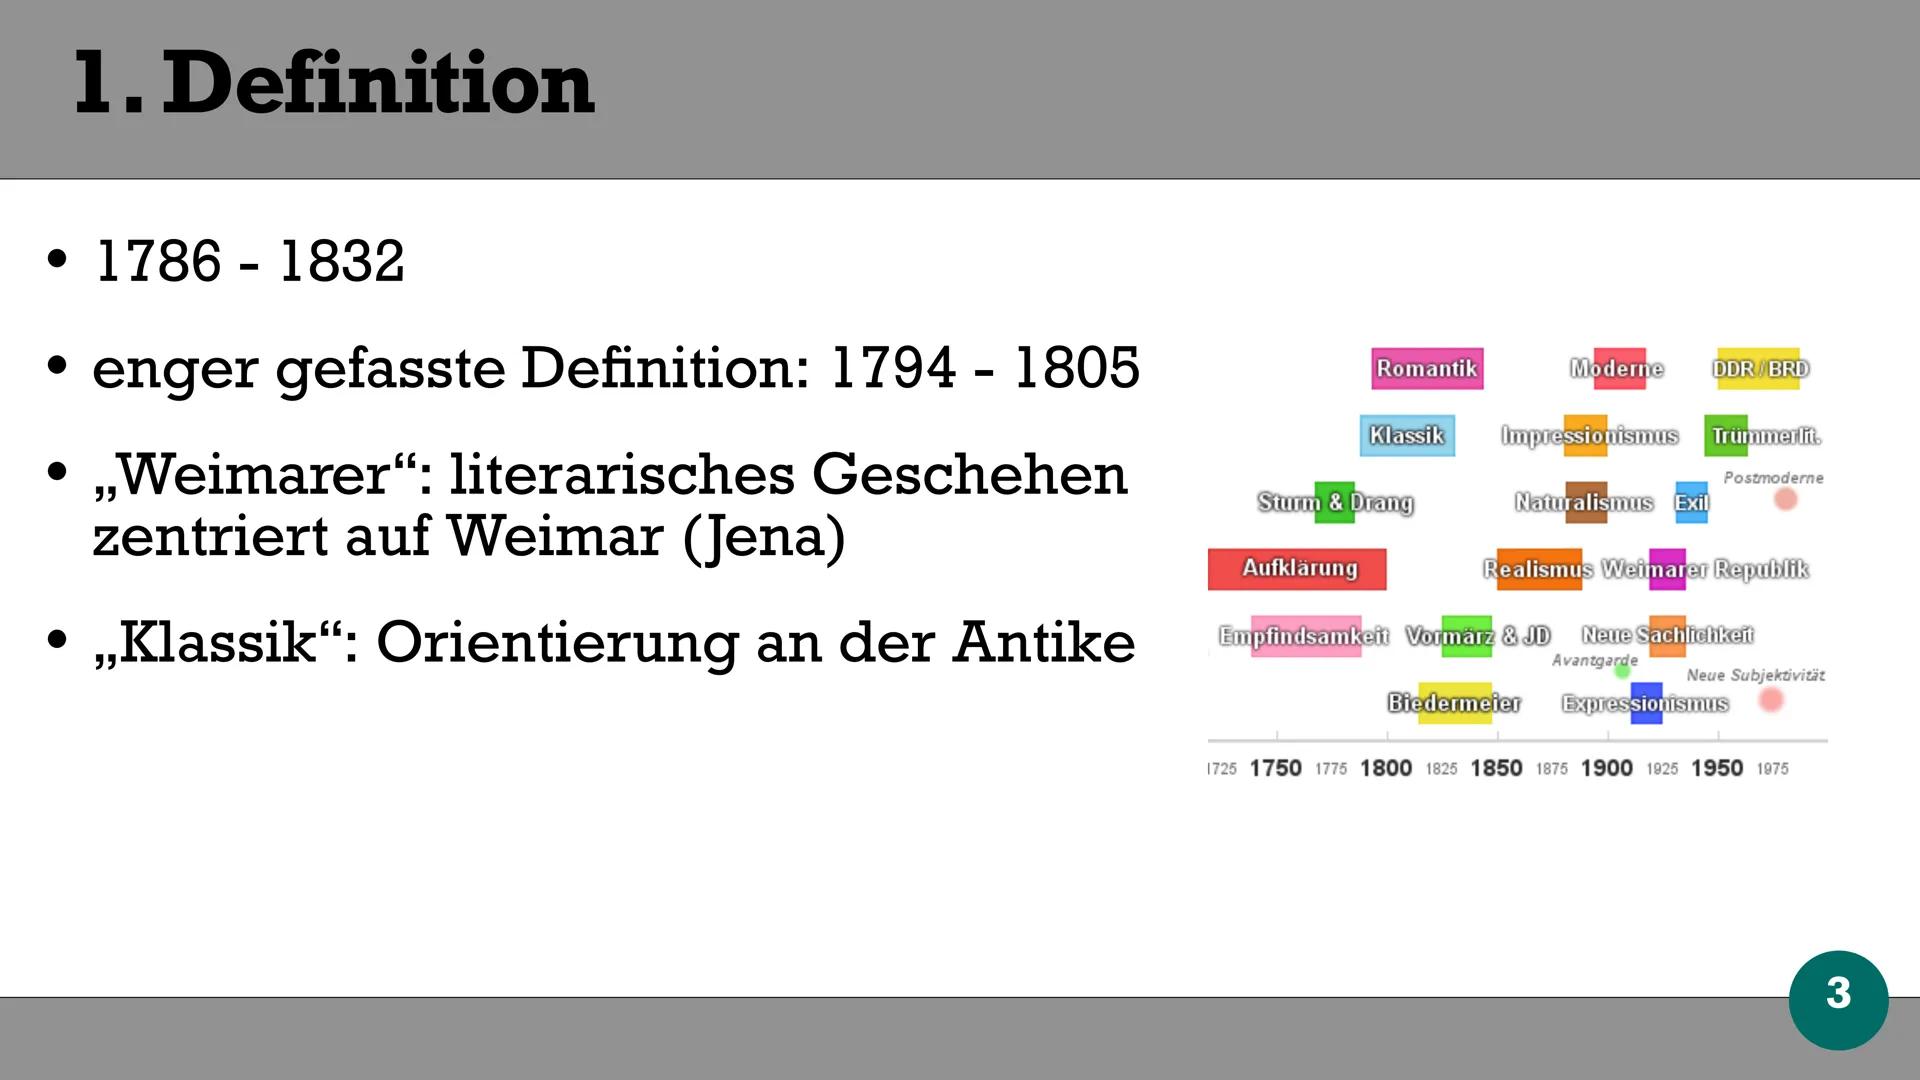 • 1786-1832 (enger gefasste Definition: 1794 - 1805)
. ,,Weimarer" : liter. Geschehen zentriert auf Weimar
• ,,Klassik": Orientierung an der